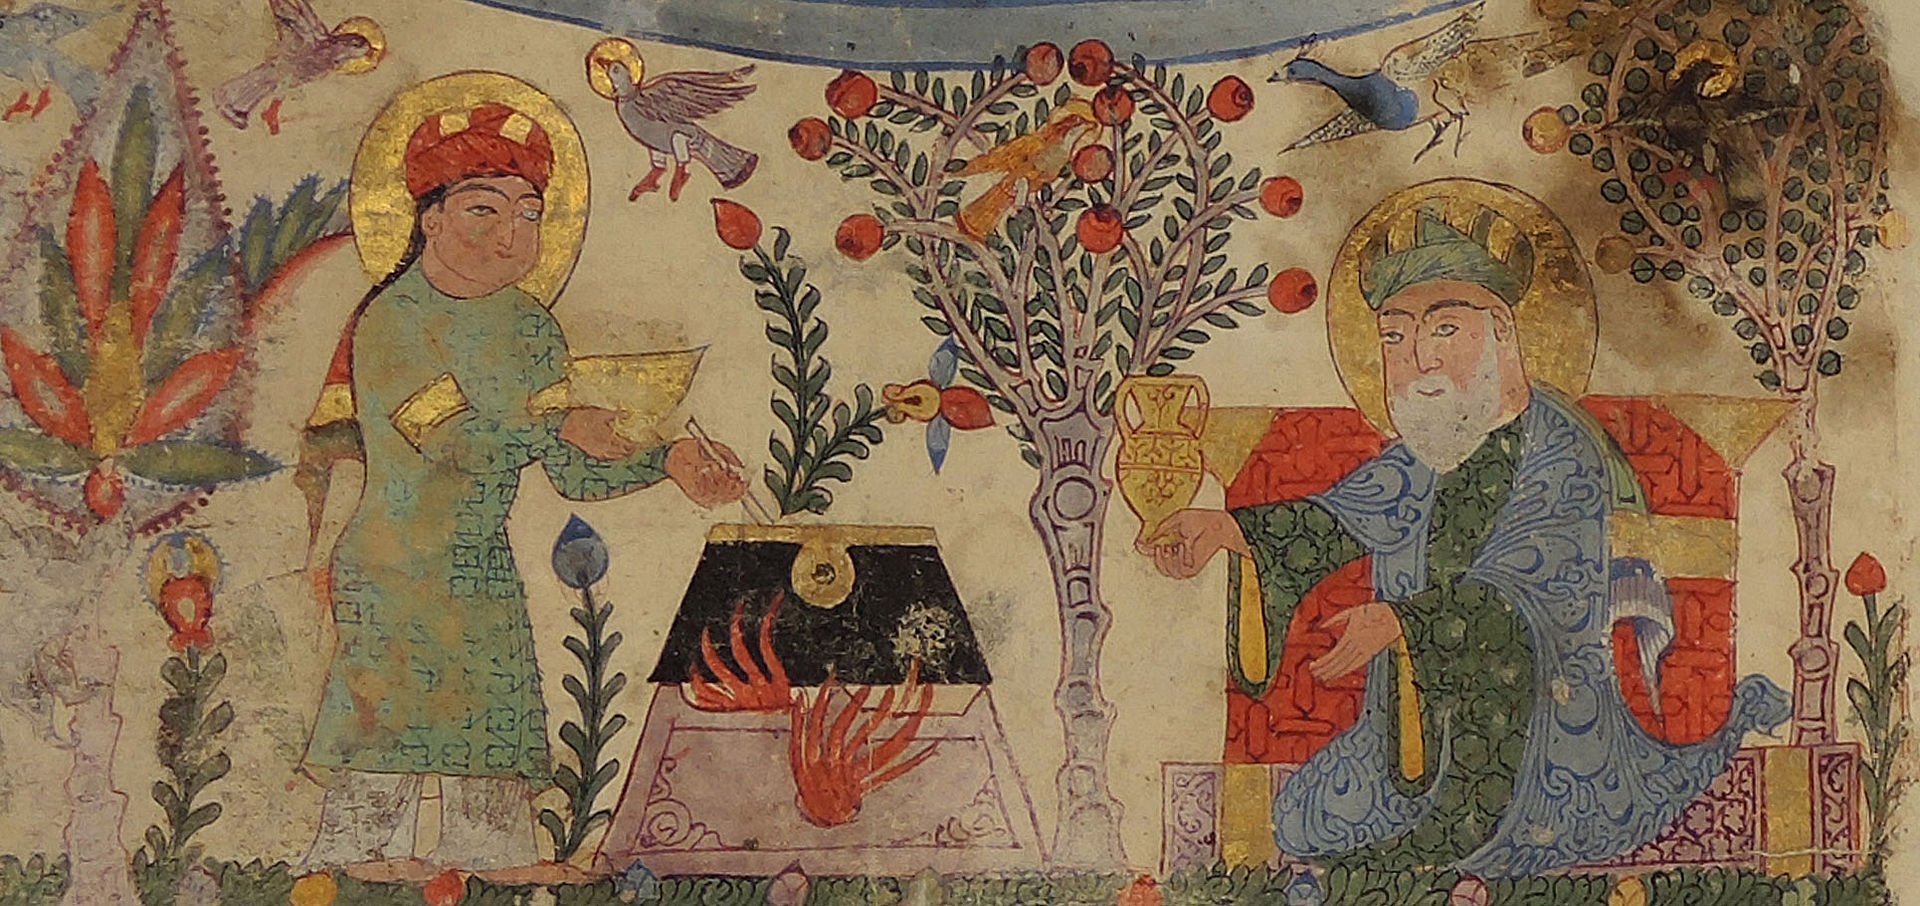 Zwei Personen, eine rührt in großem Topf zwischen Pflanzen, vergoldete Details